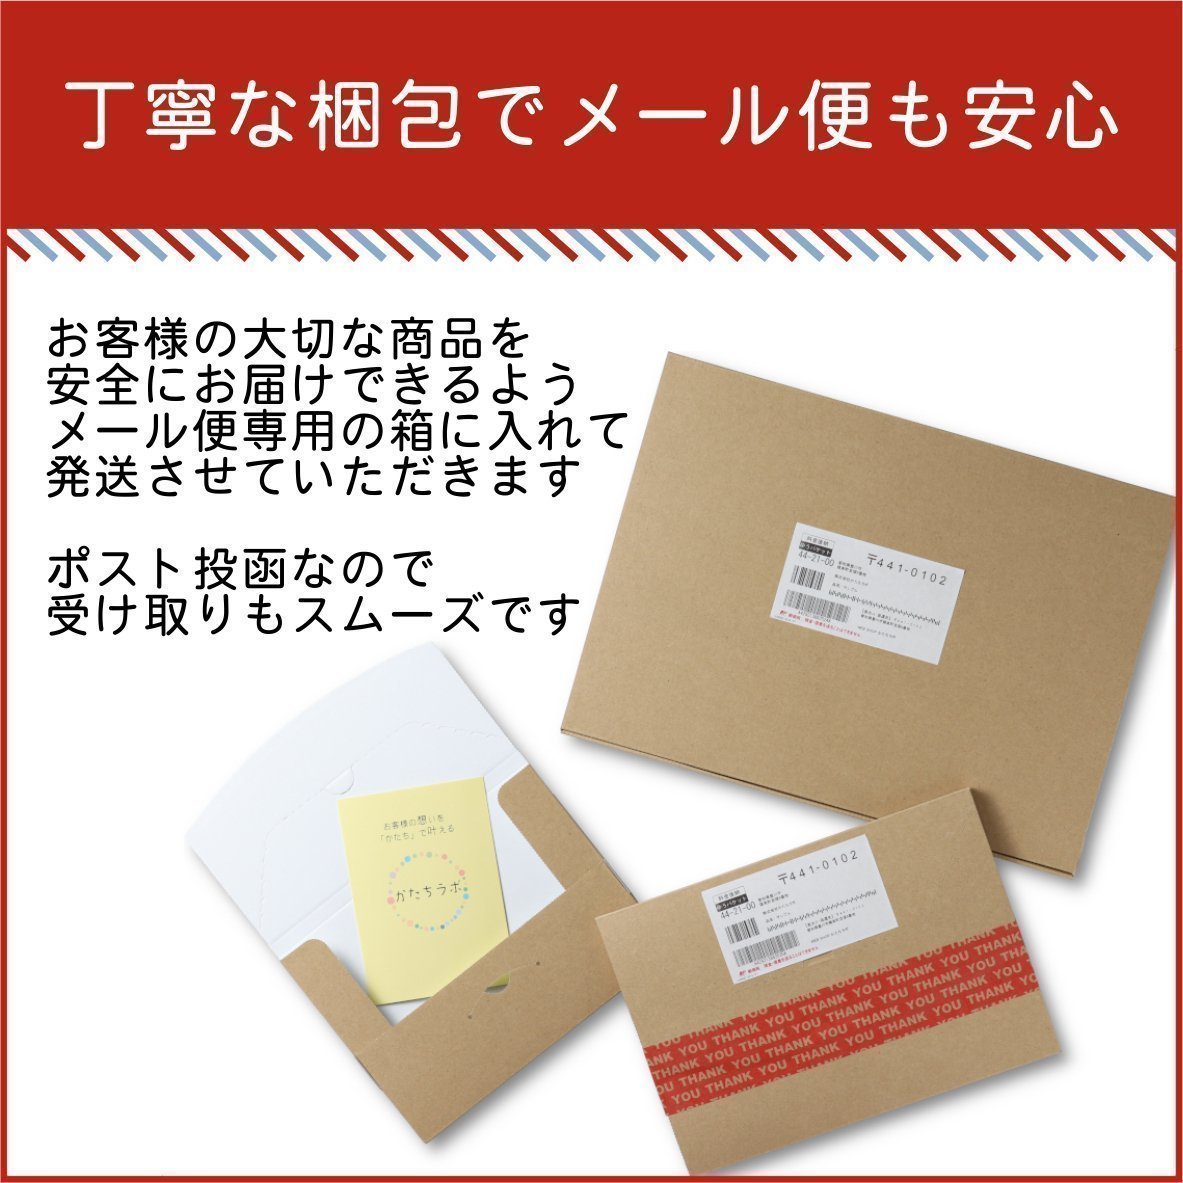 サインプレート 角丸 150×150 S (新型コロナウイルス感染対策実施中) ブロンズ 銅板風 感染防止 案内表示 感染予防 日本製 シール式 (配送2)